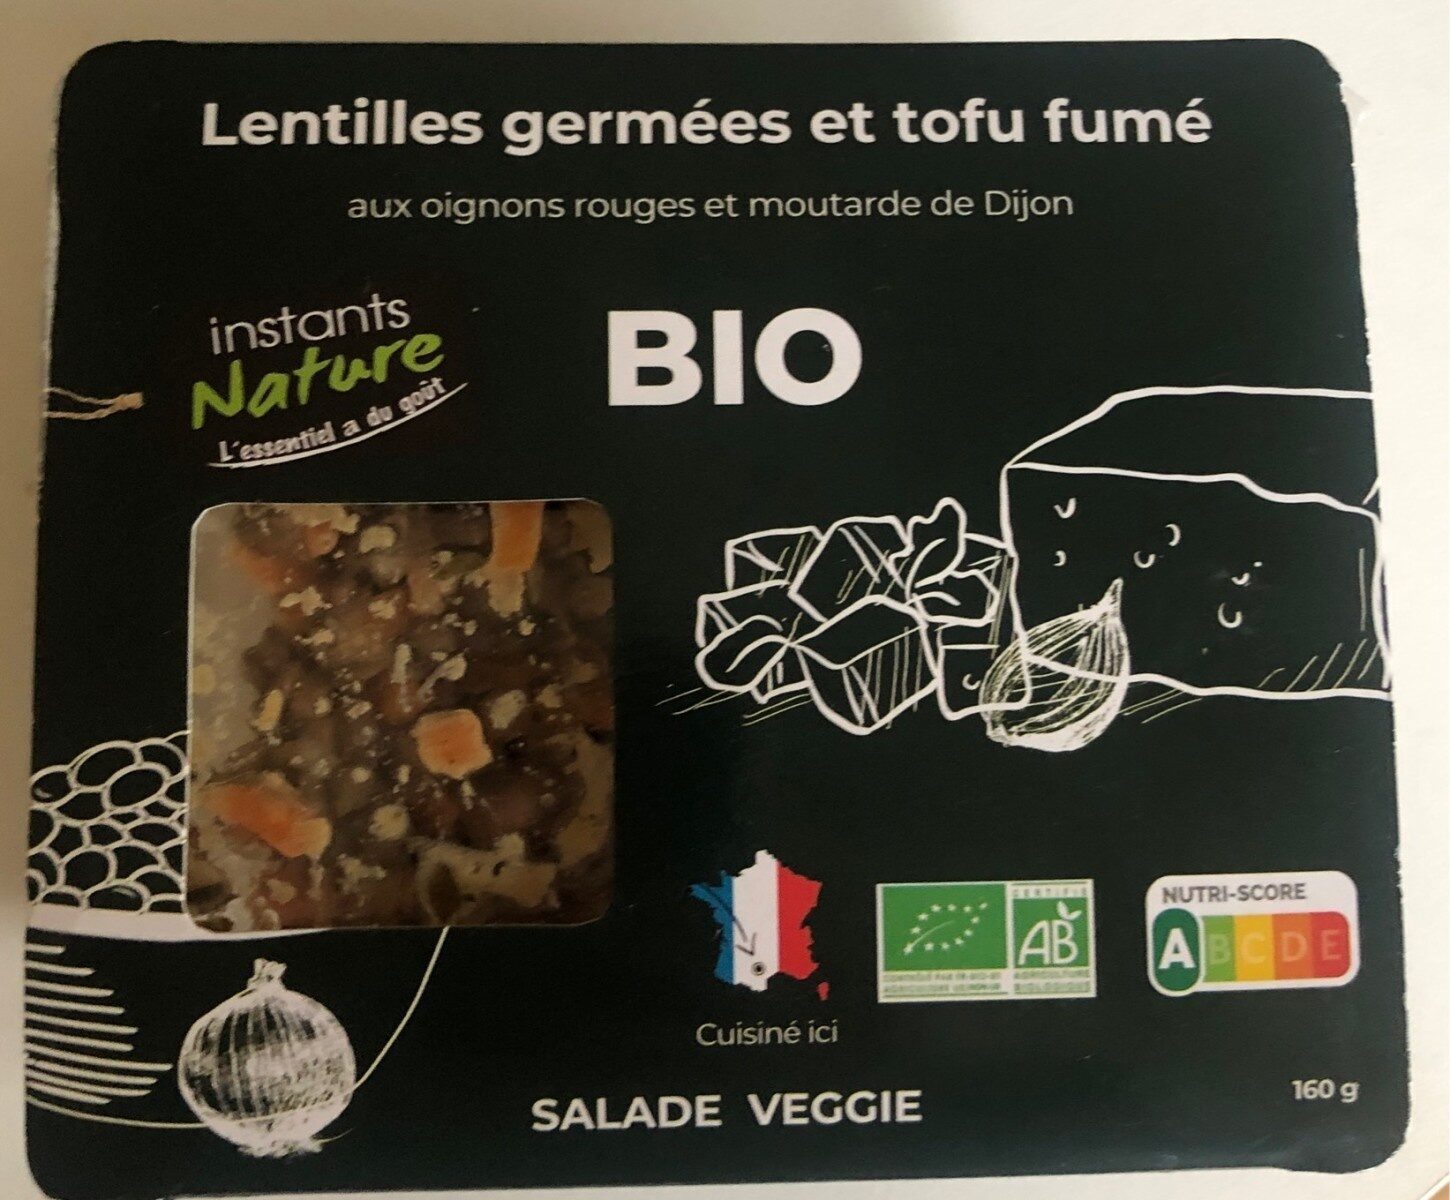 Lentilles germées et tofu fumé - Produkt - fr